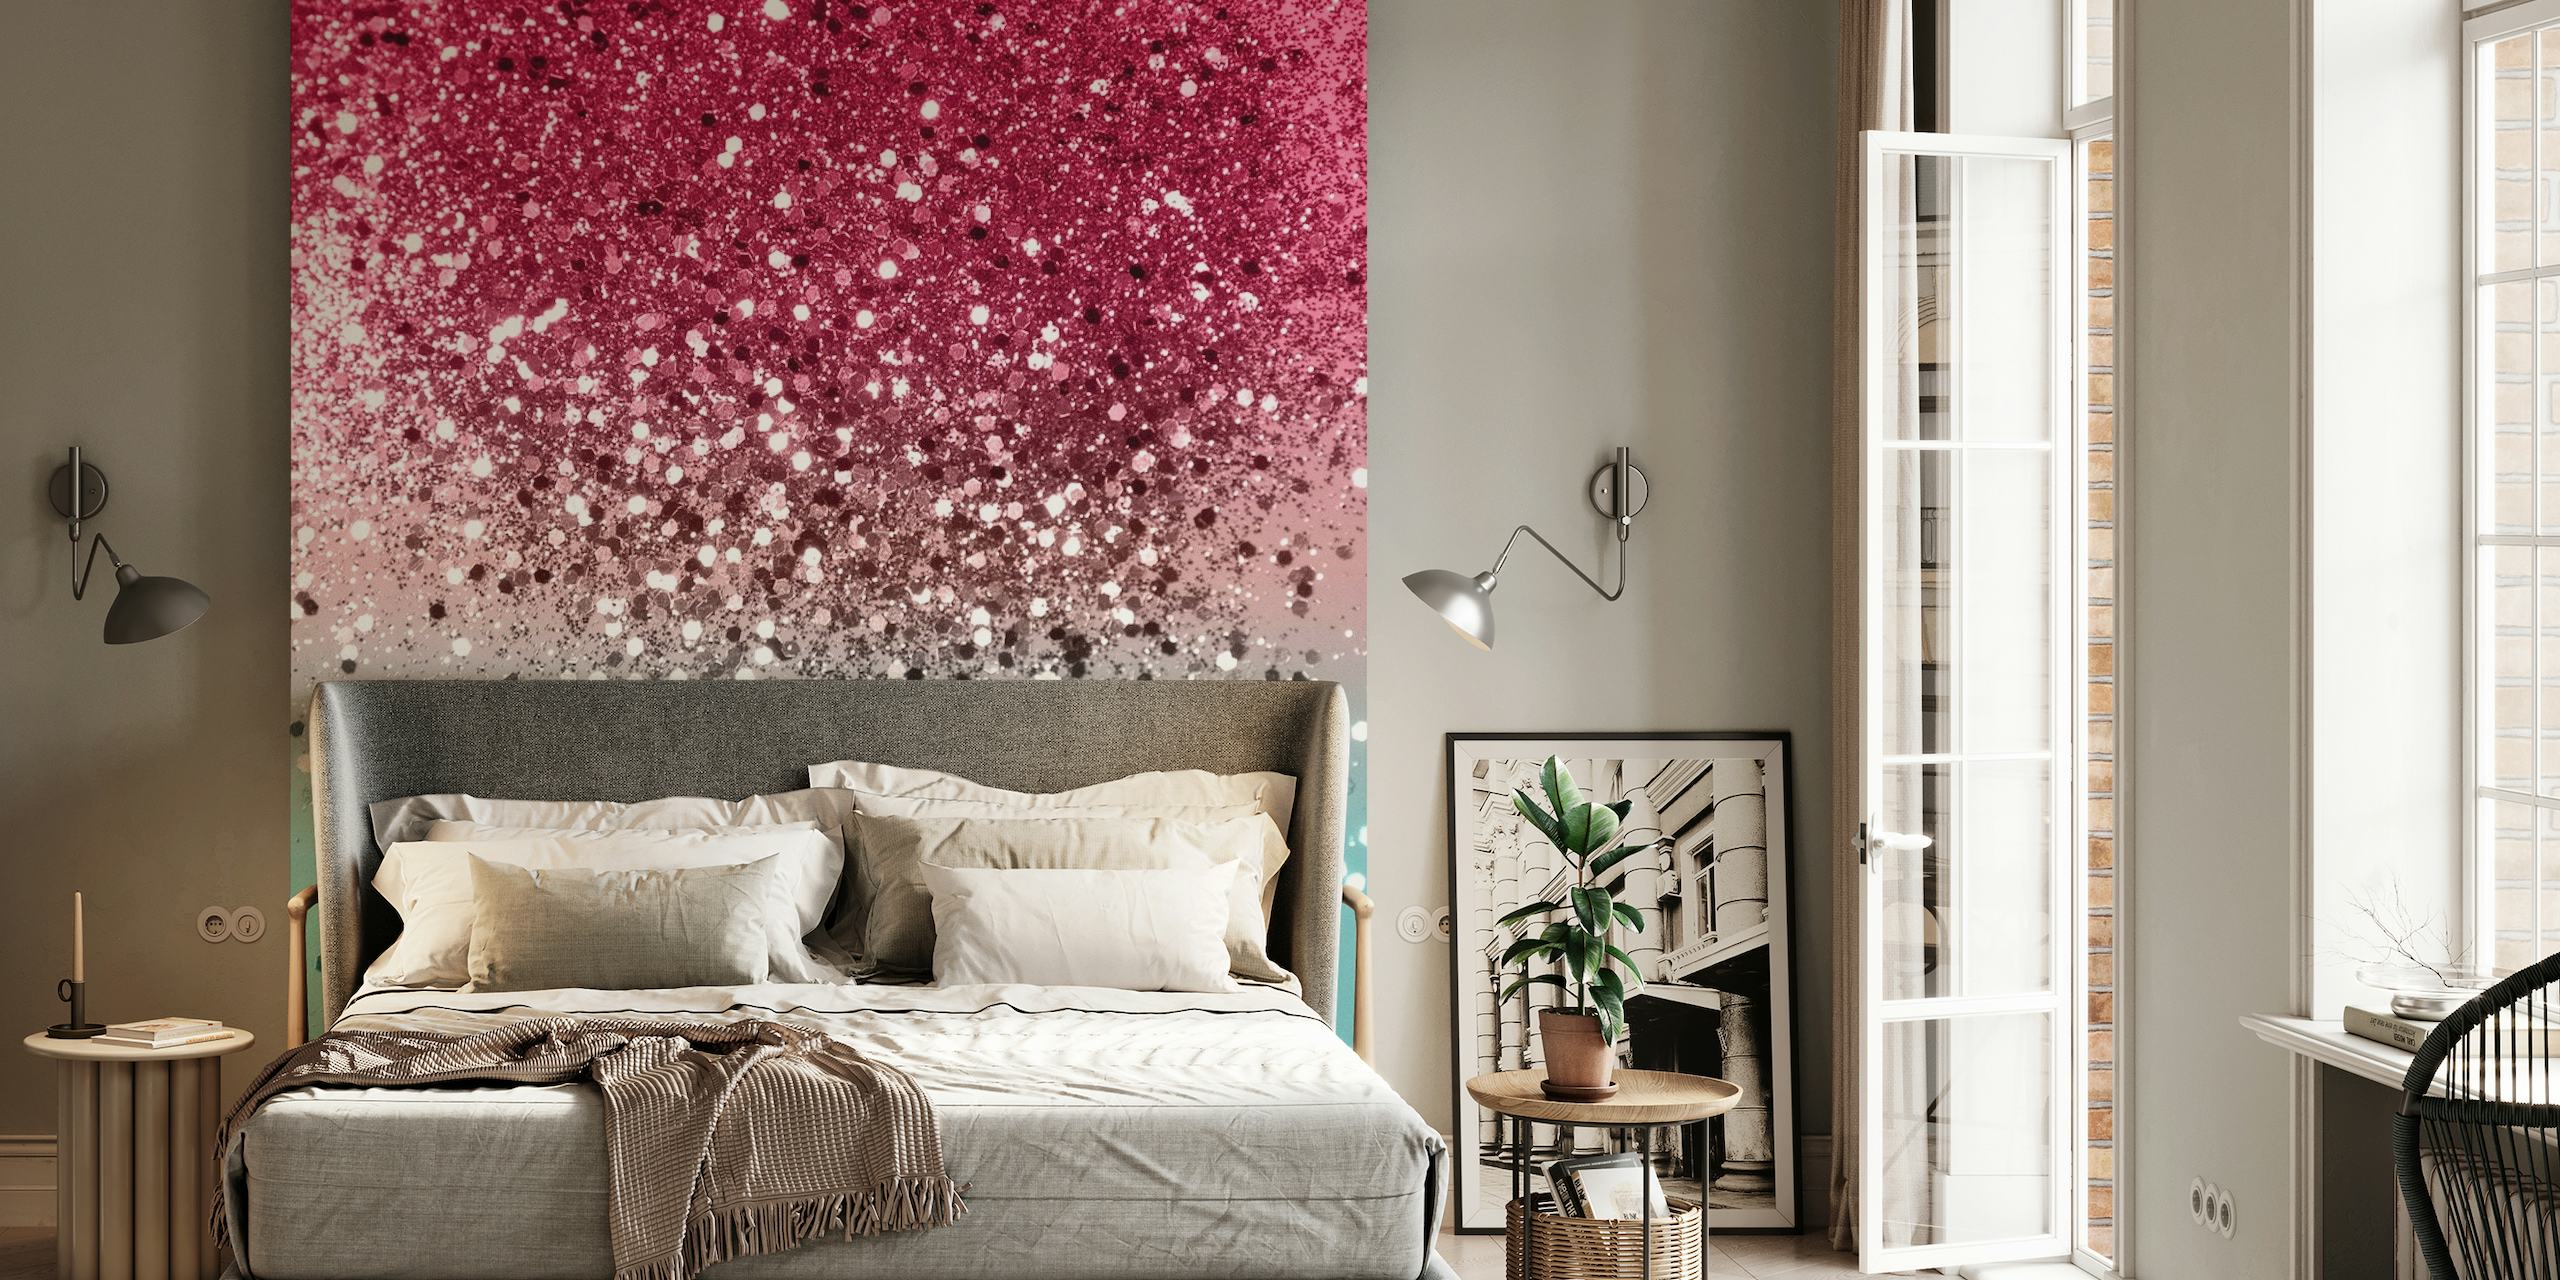 Moderno gradiente tropical de melancia rosa e turquesa com um fotomural vinílico de parede com efeito de brilho cintilante